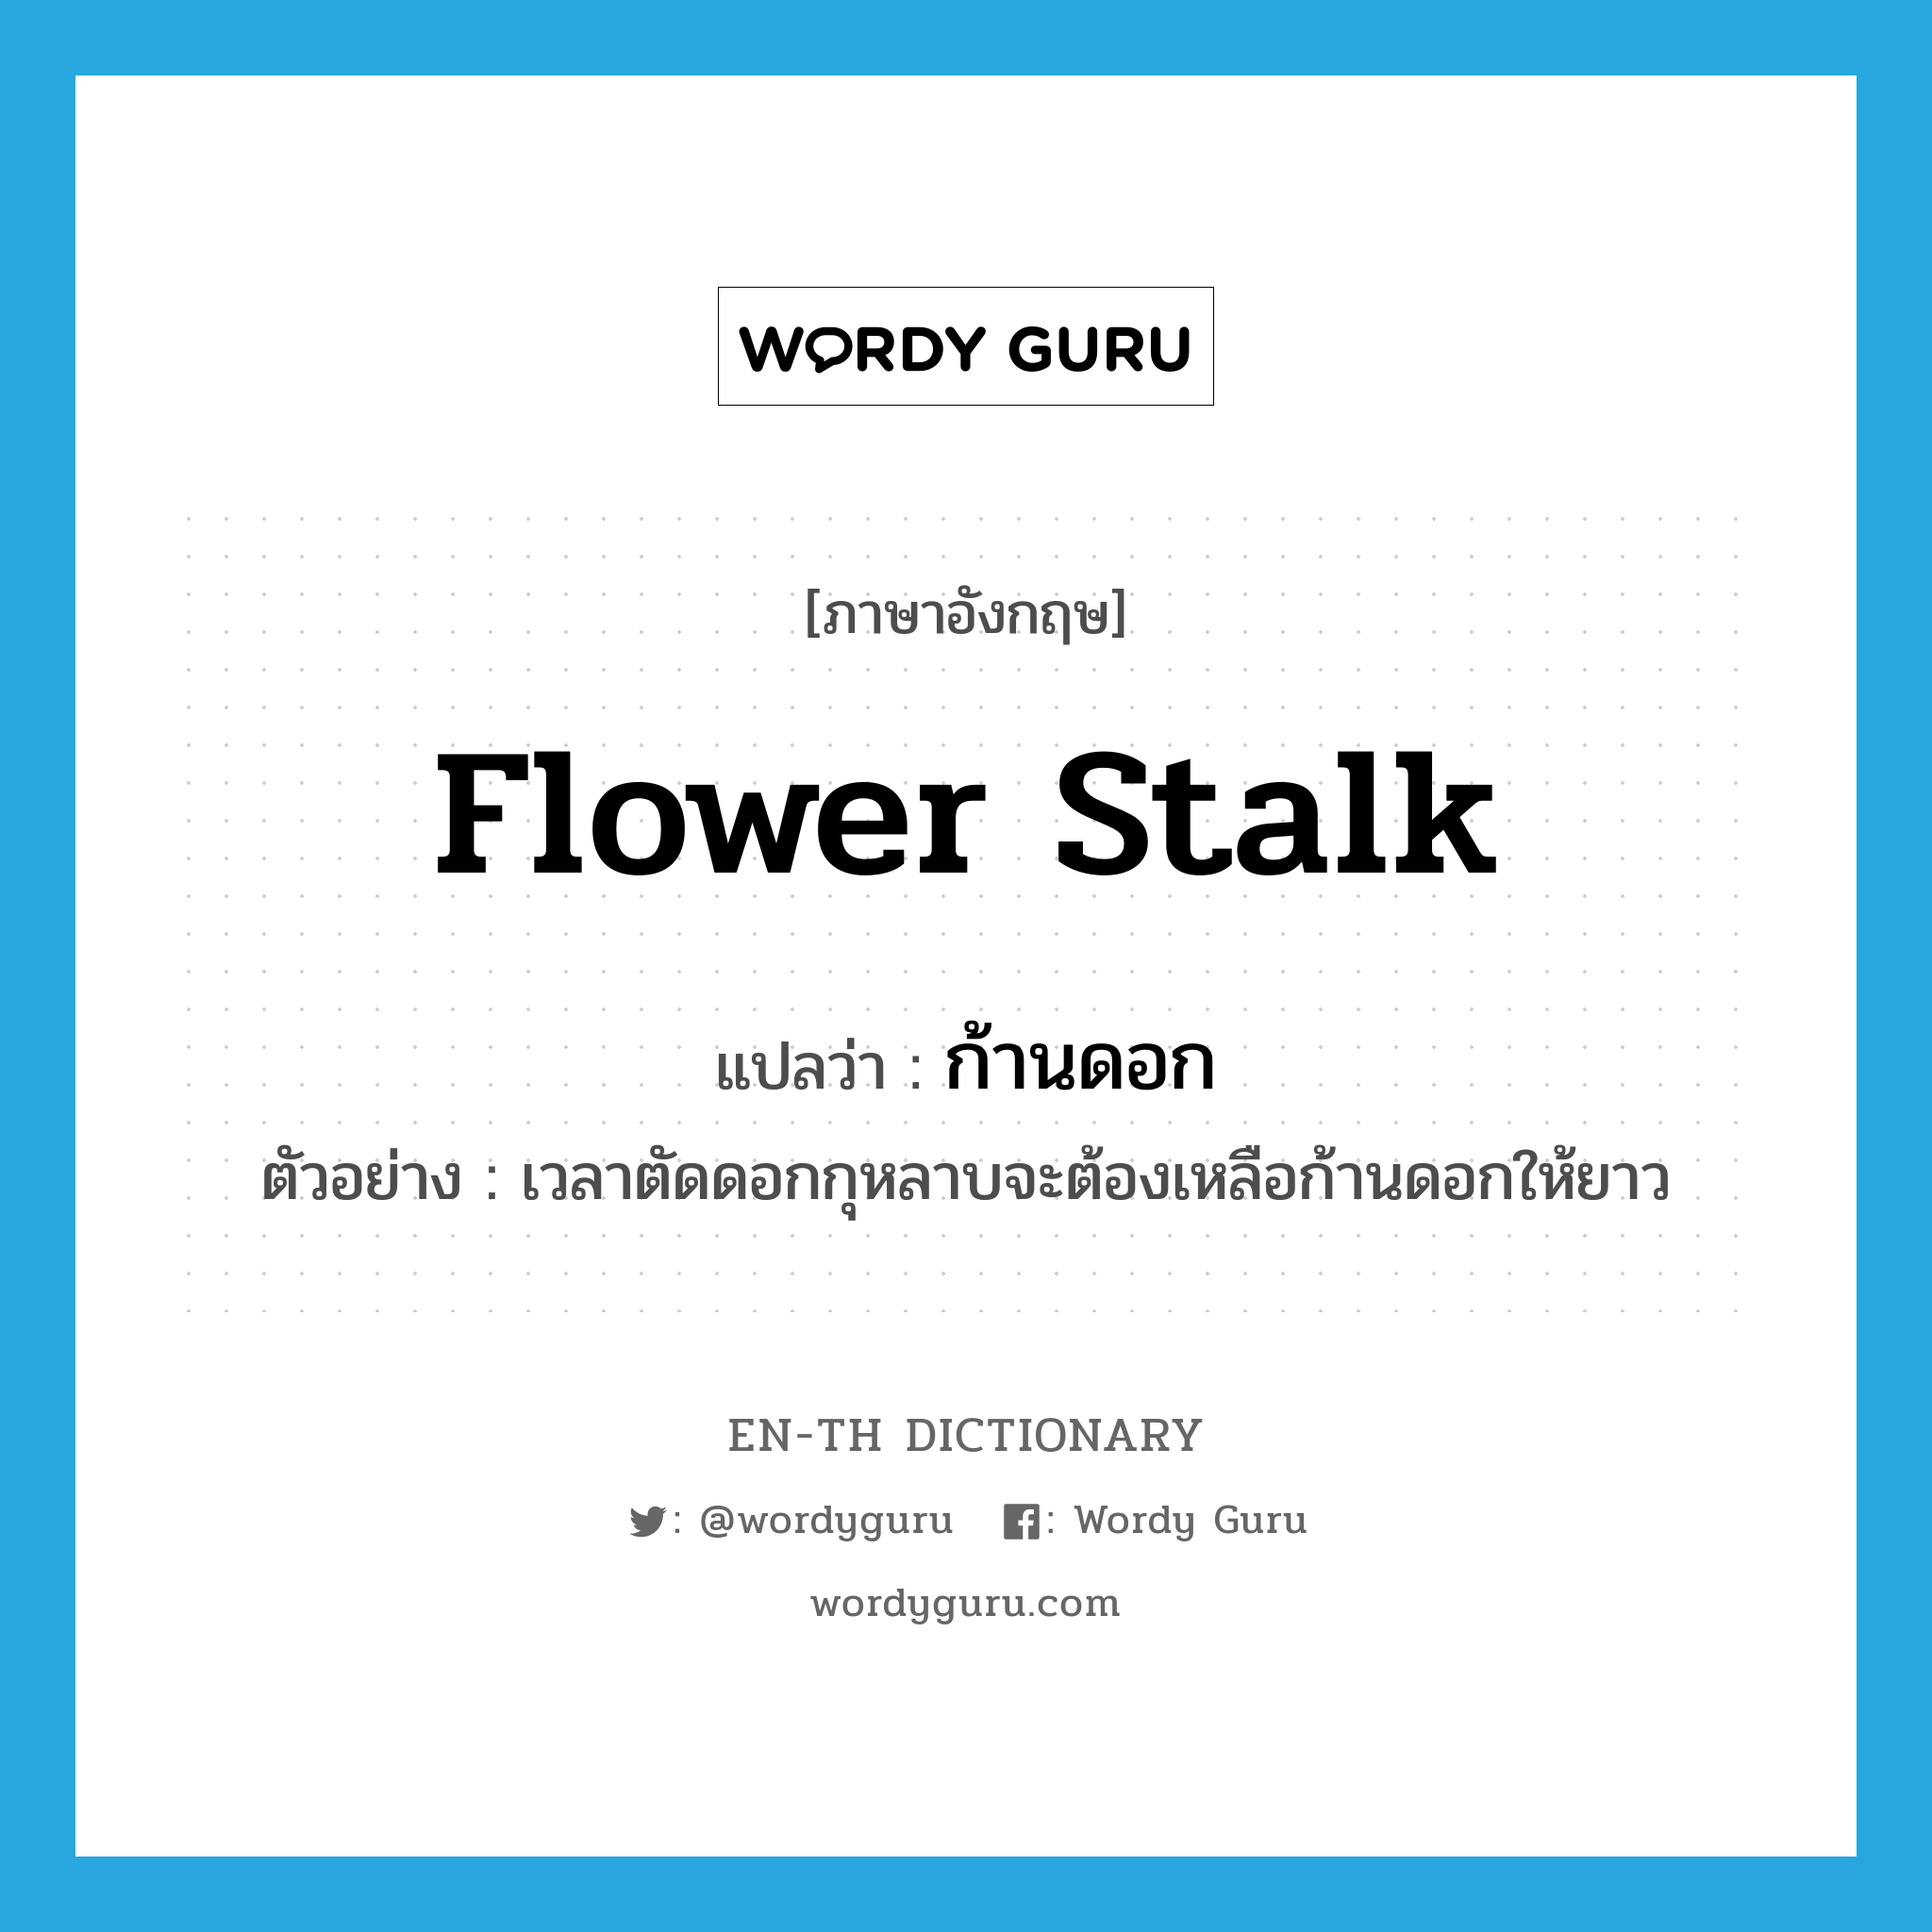 flower stalk แปลว่า?, คำศัพท์ภาษาอังกฤษ flower stalk แปลว่า ก้านดอก ประเภท N ตัวอย่าง เวลาตัดดอกกุหลาบจะต้องเหลือก้านดอกให้ยาว หมวด N